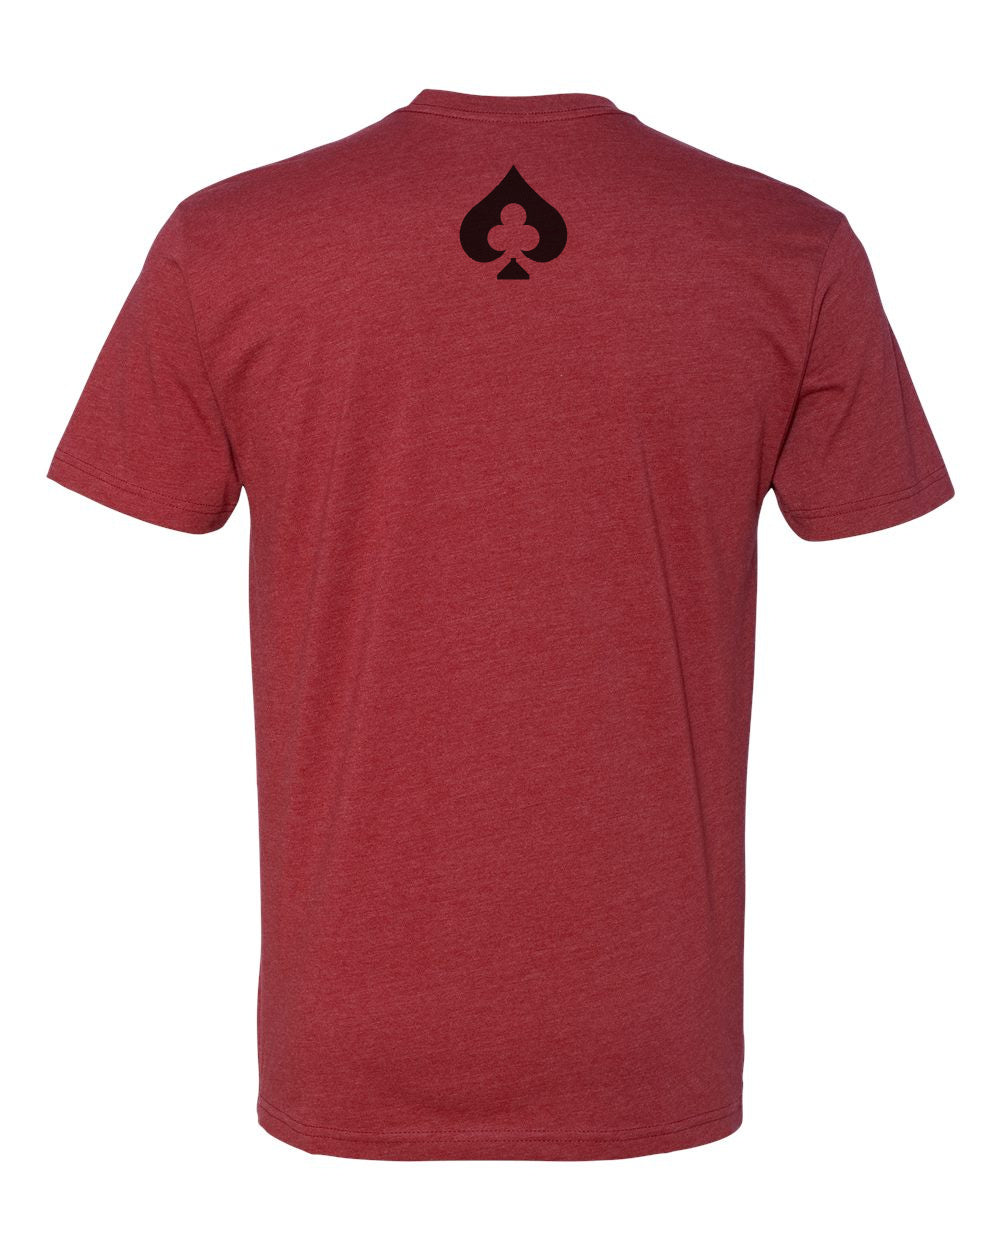 LCC Text Shirt - Cardinal